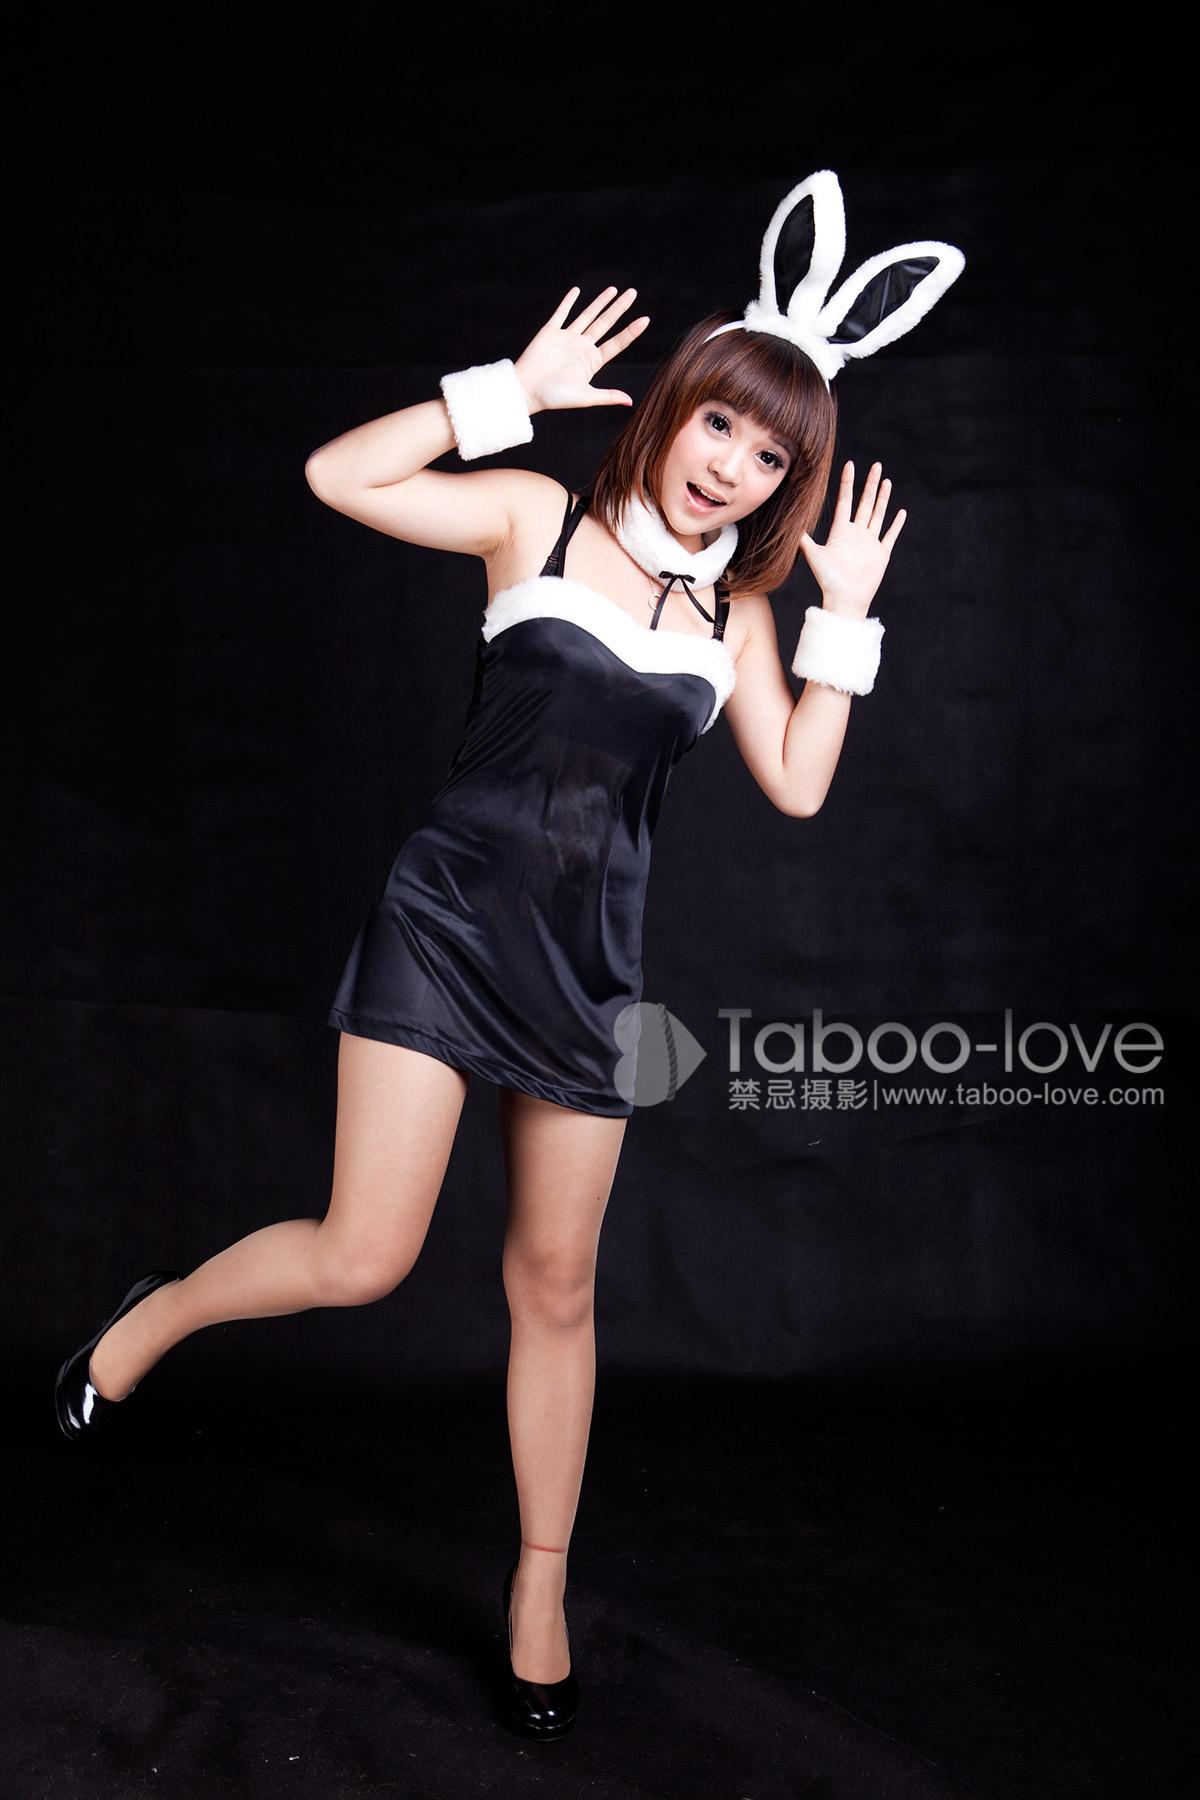 Taboo-love NO.033 可樂 可樂妹妹小兔女郎 禁忌攝影 - 12.jpg